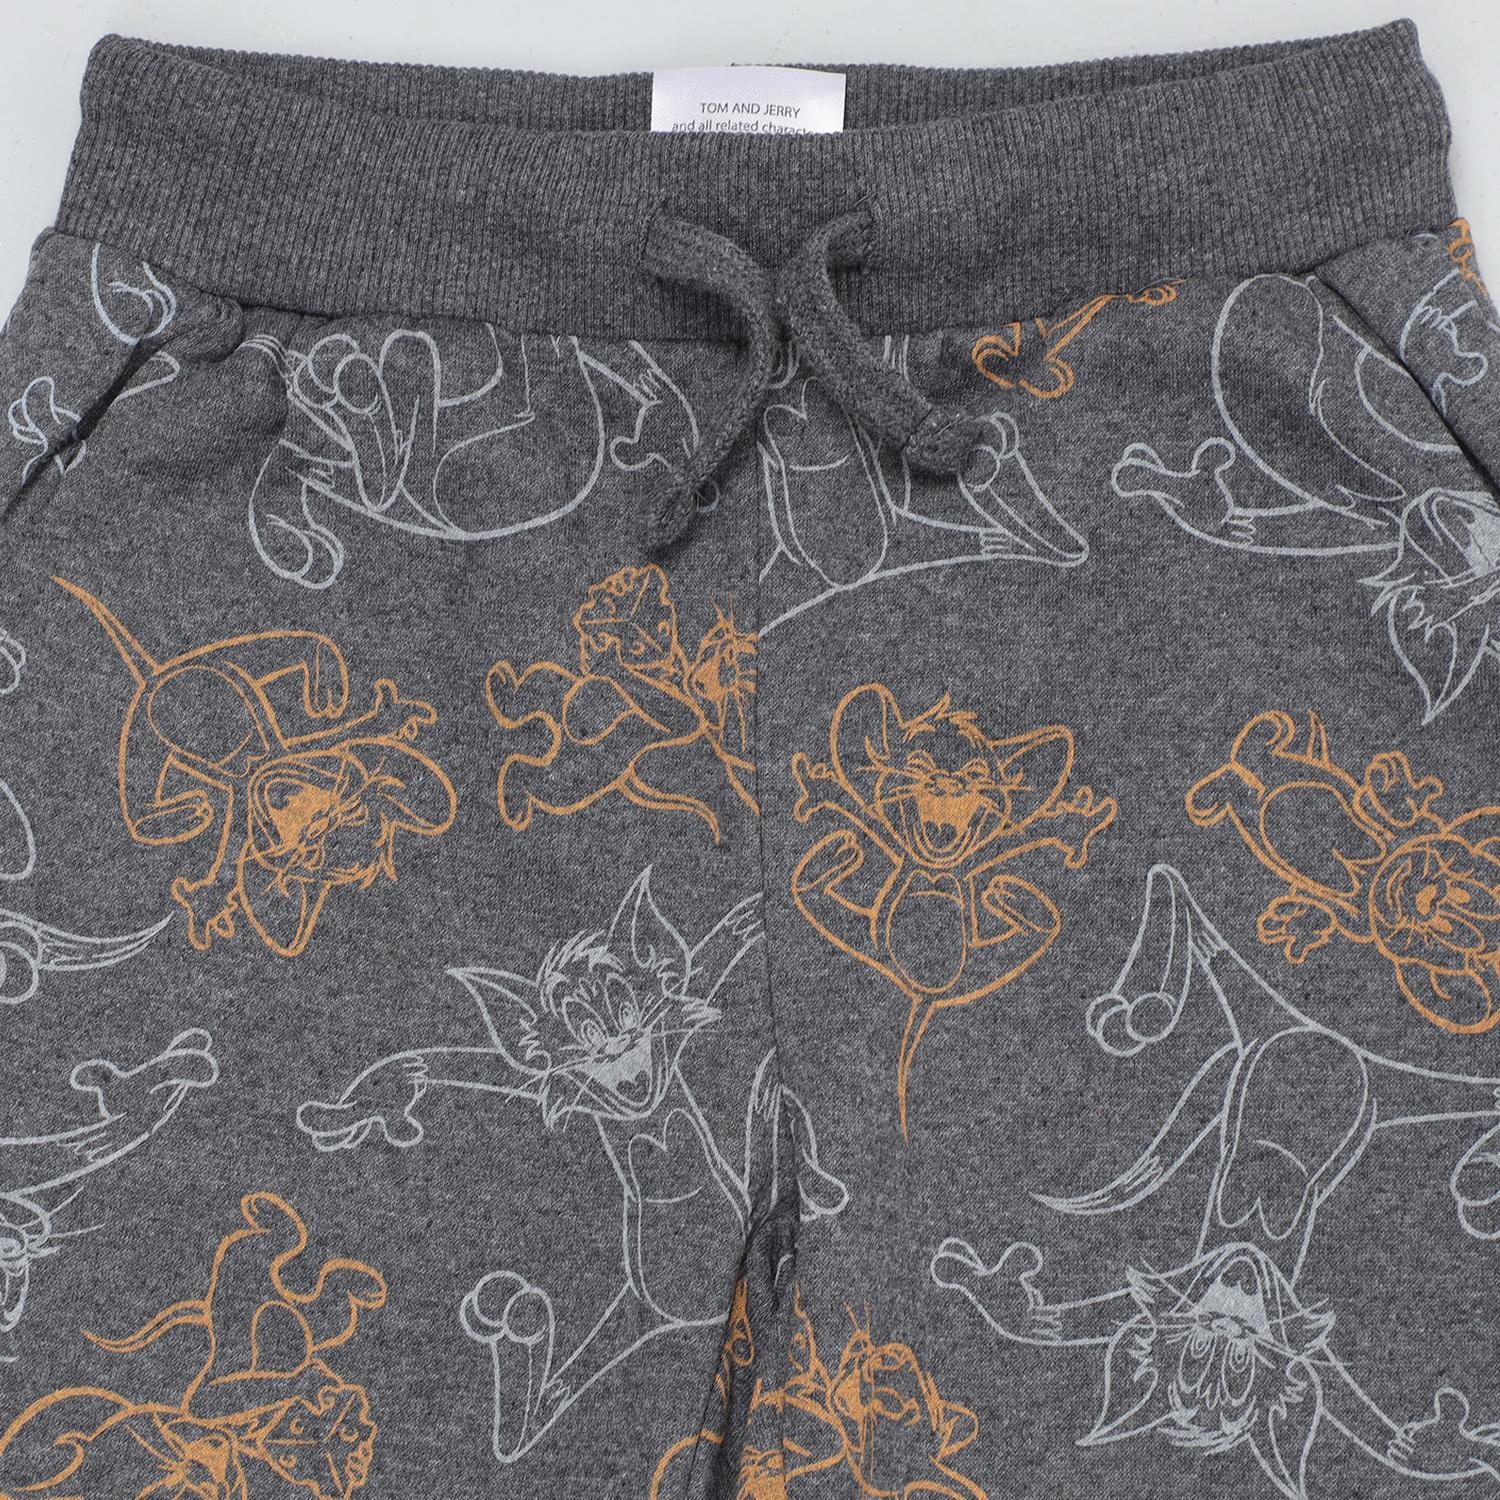 Soft Fleece Pajama Track Pants Printed for Boys - Set of 2